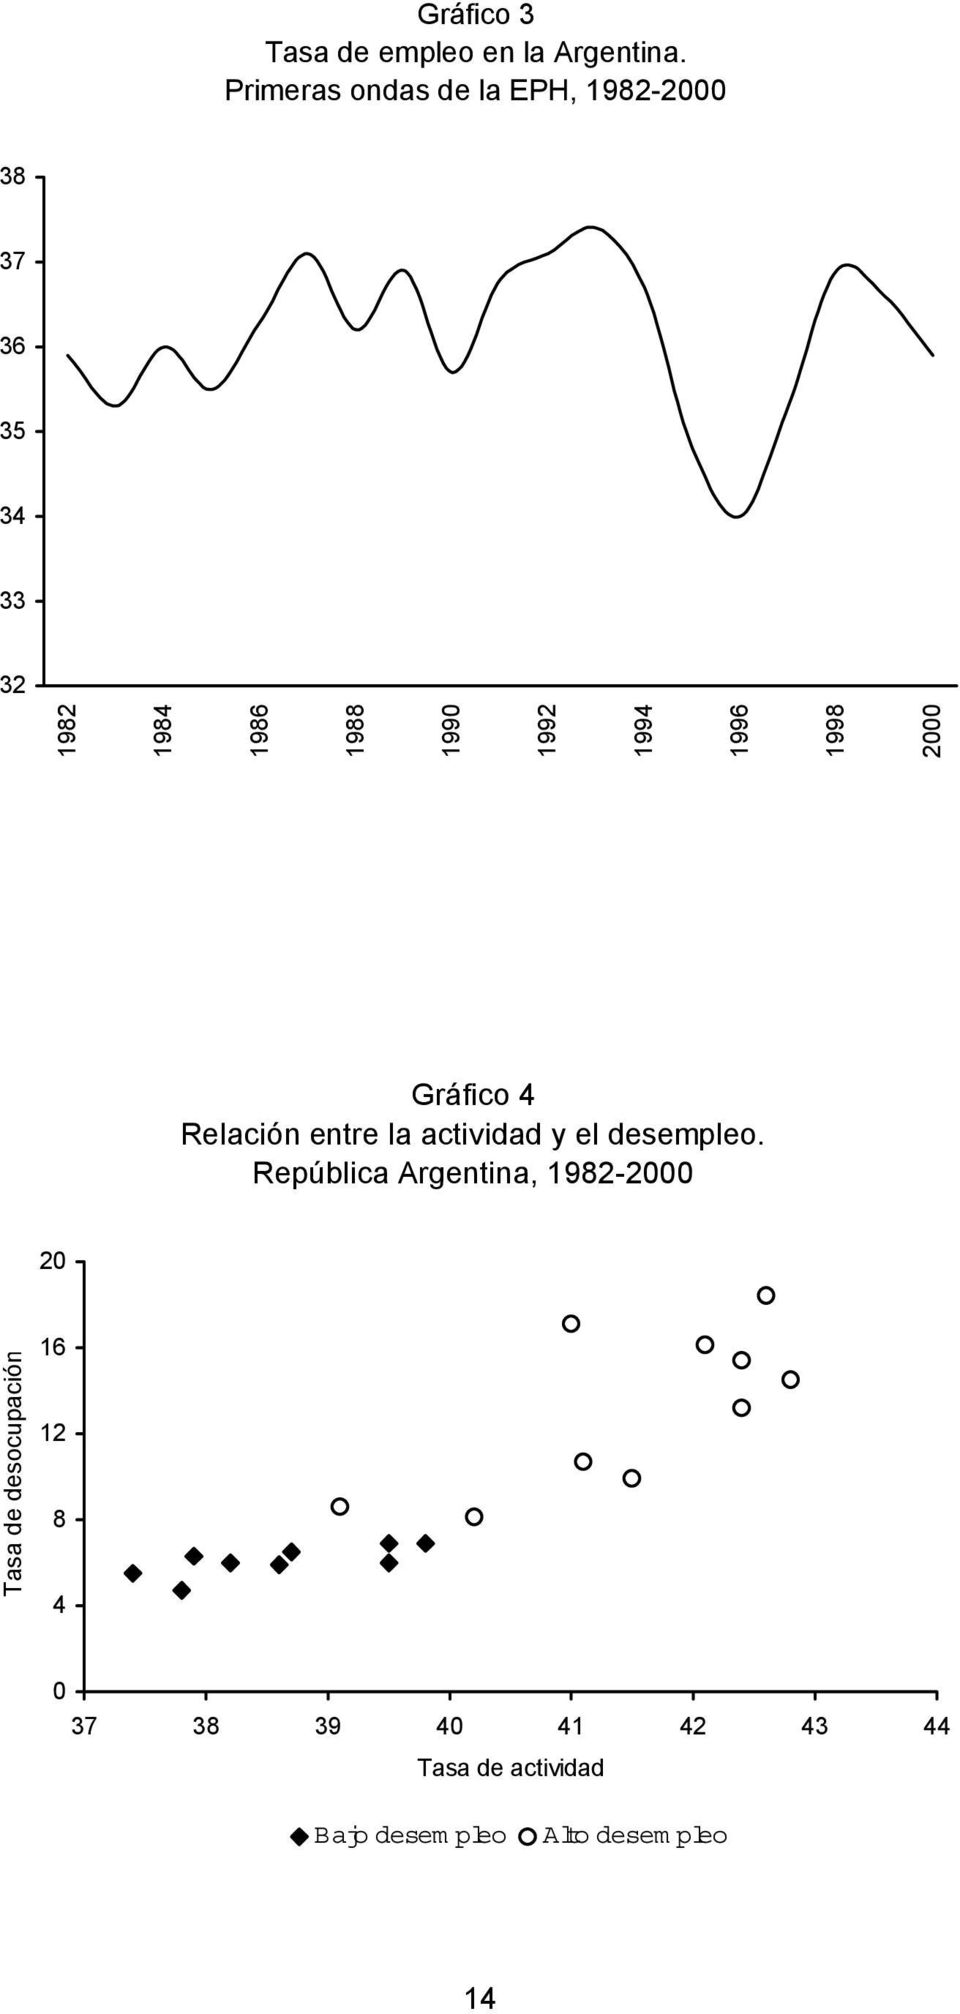 1994 1996 1998 2000 Gráfico 4 Relación entre la actividad y el desempleo.